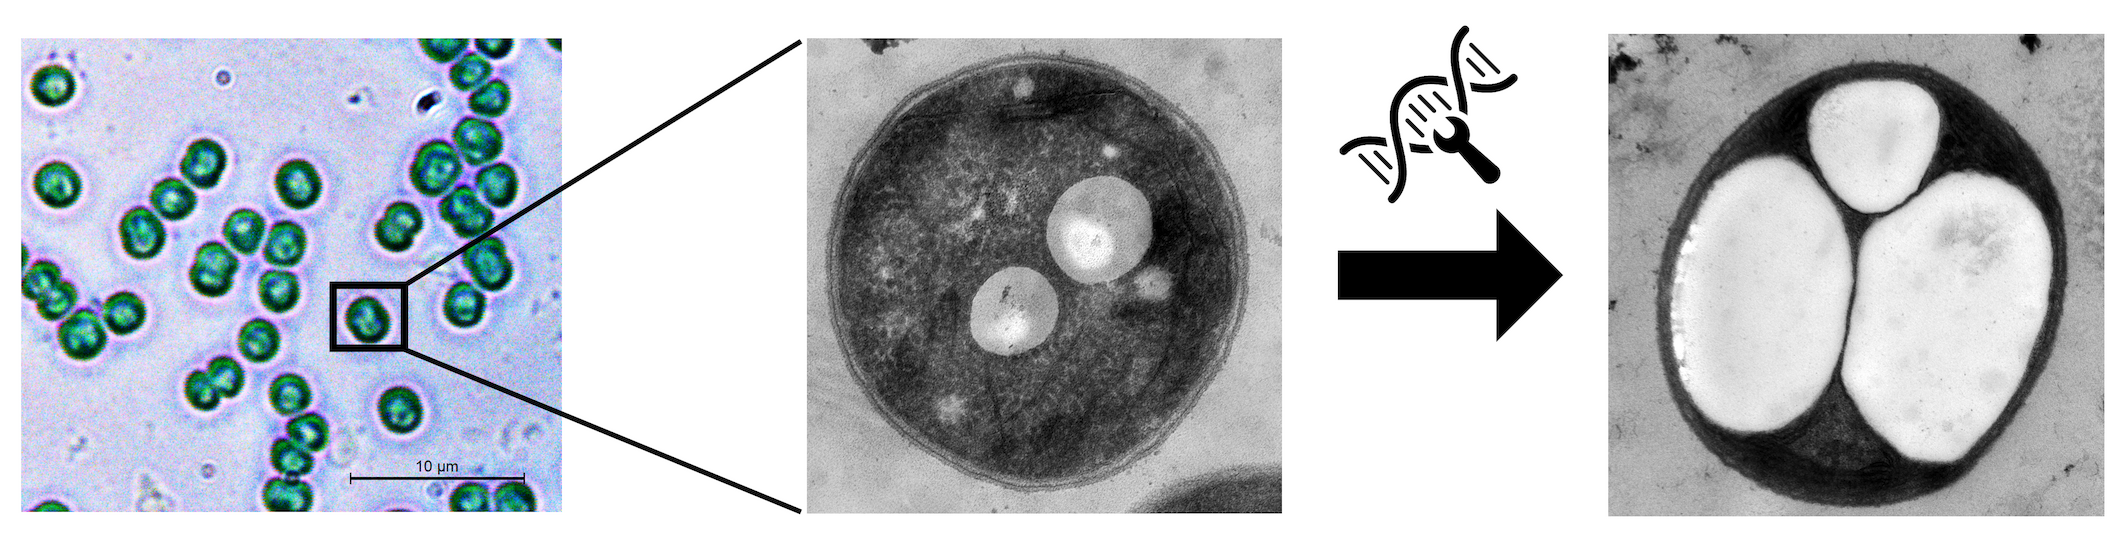 Mikroskopieaufnahmen von Cyanobakterien. Schaut man sich eine einzelne Zelle unter dem Elektronenmikroskop näher an, kann man kleine weiße Kugeln beobachten, die aus dem Bioplastik PHB bestehen. Die neu gezüchteten Zellen weisen einen stark erhöhten Gehalt an PHB auf.